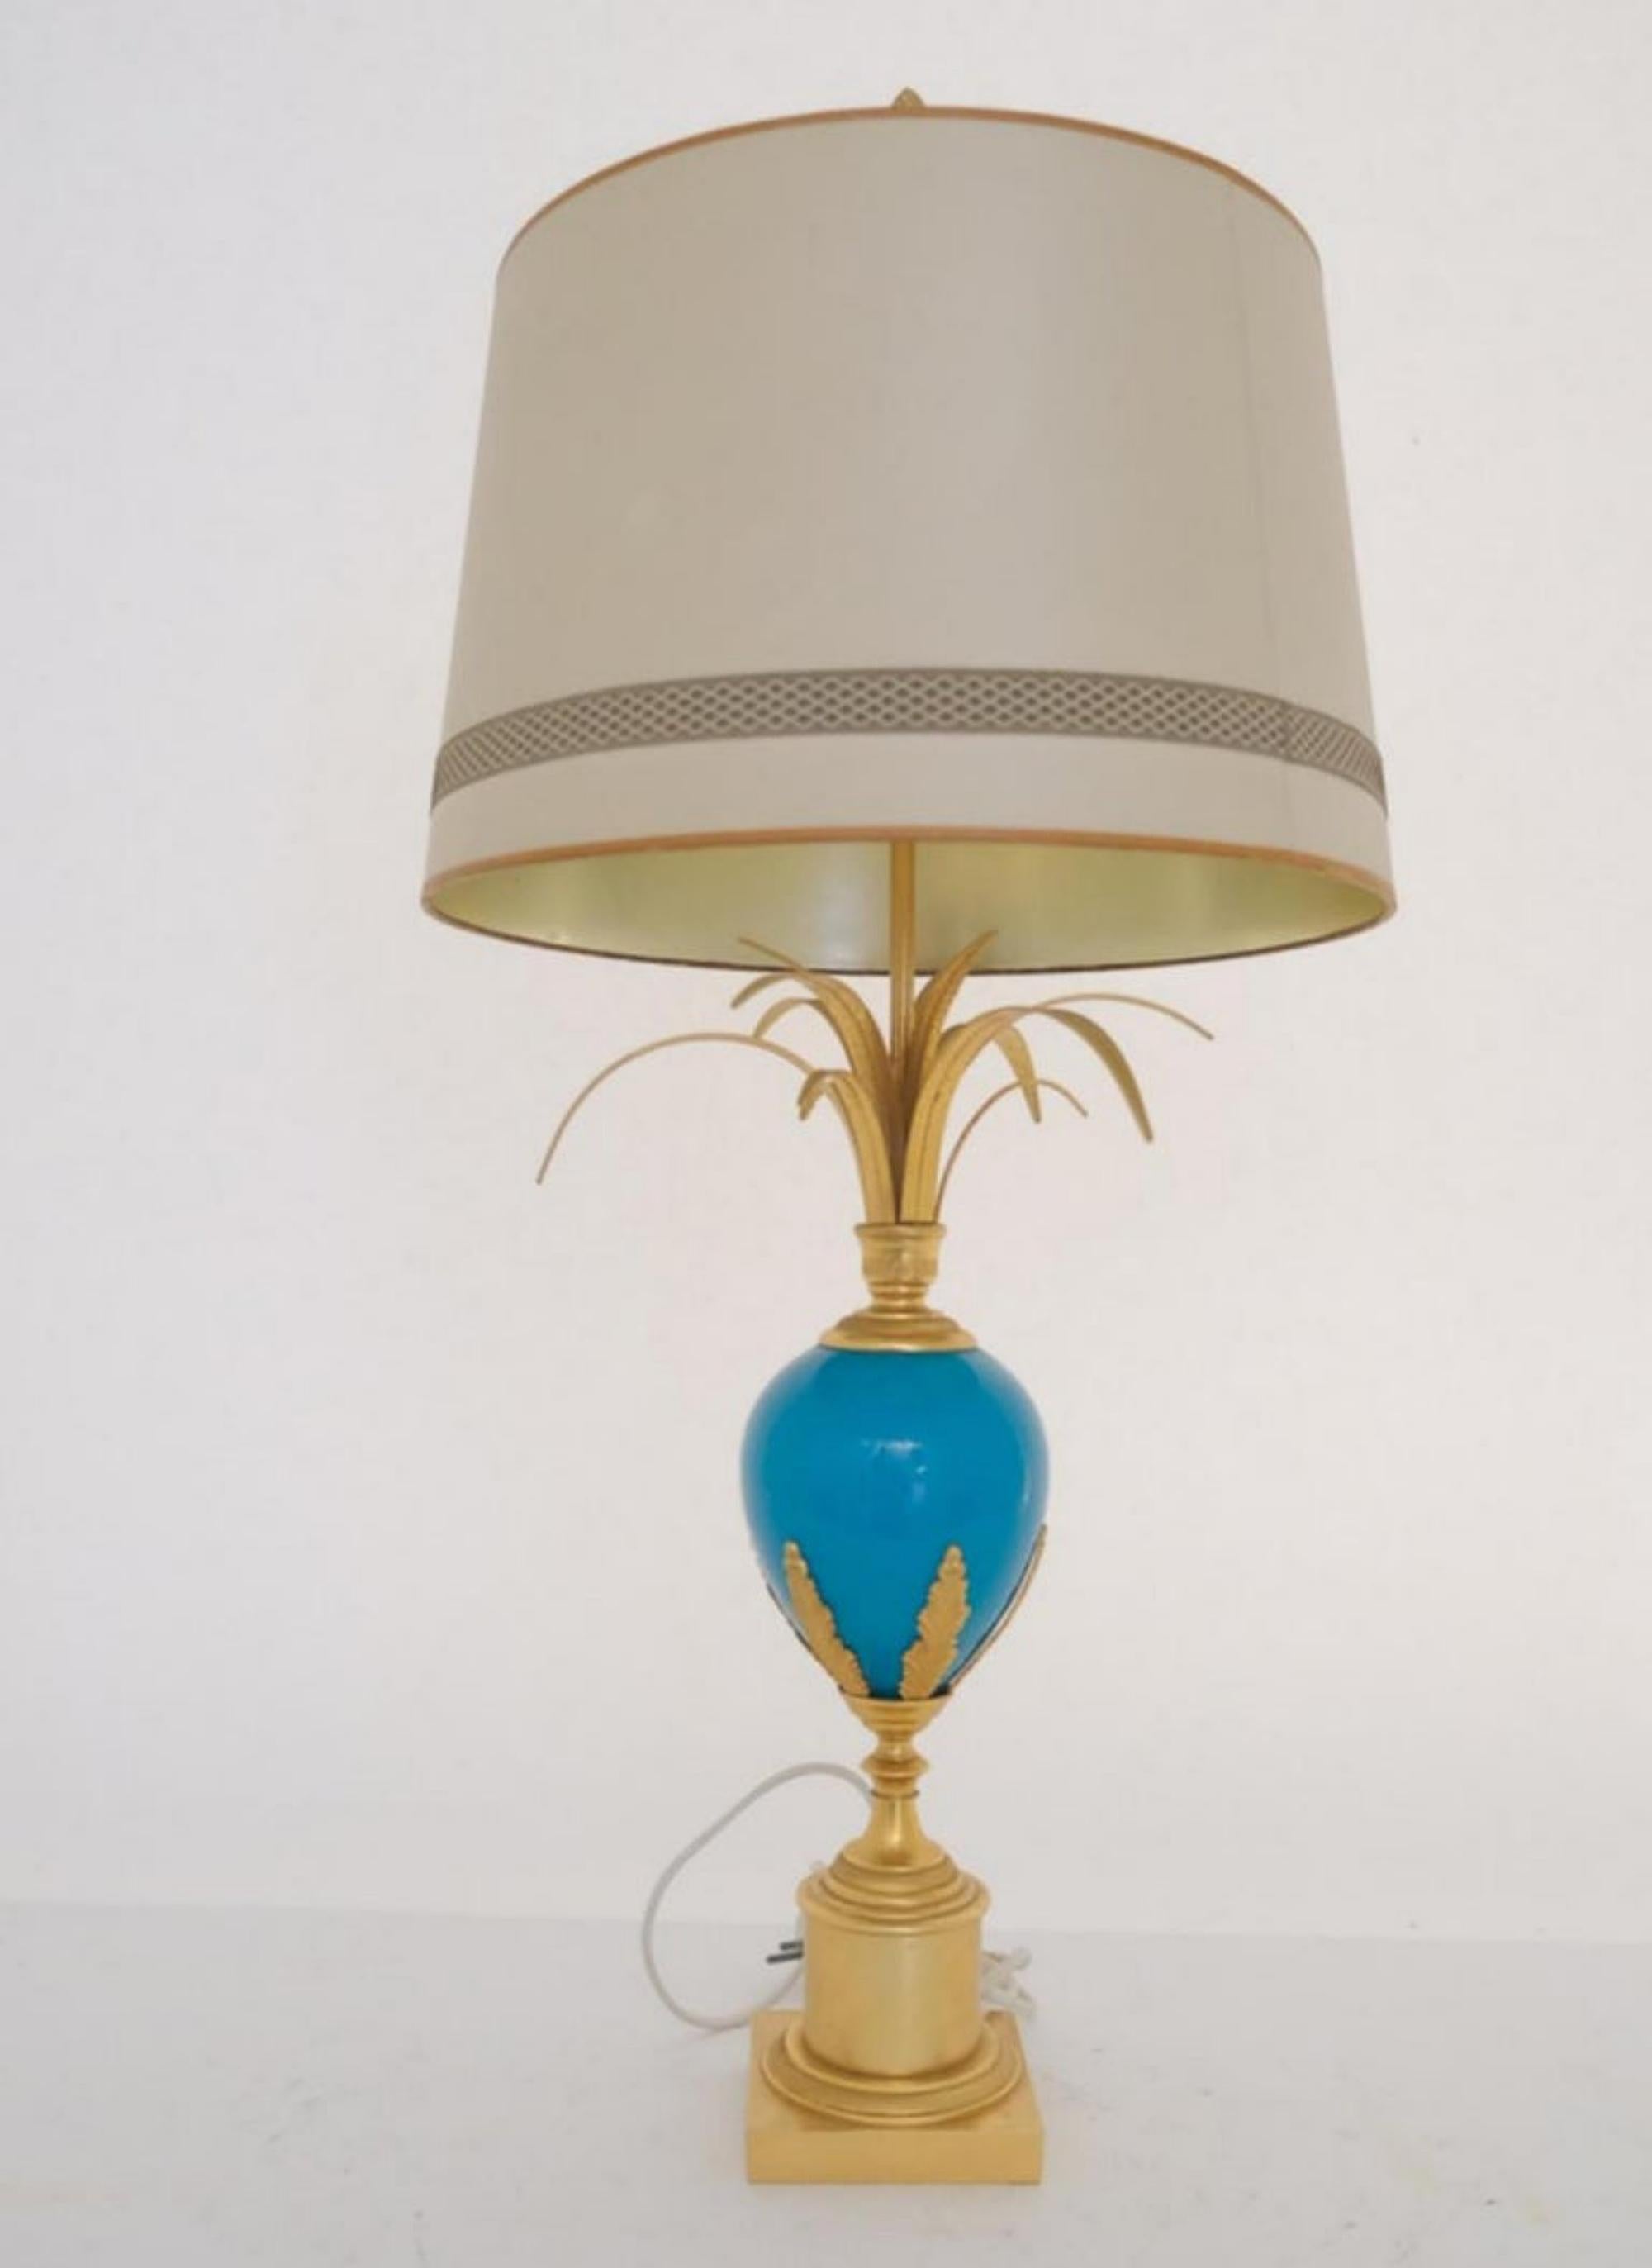 Tischlampe aus Straußeneier mit blauem und türkisfarbenem Opal, S.A. Boulanger

Blau-türkisfarbene tischlampe mit straußenei von S.A. Boulanger.  Eine stilvolle Tischlampe mit einem blauen opalinen Straußenei und Palmenblättern an der Spitze.  Der